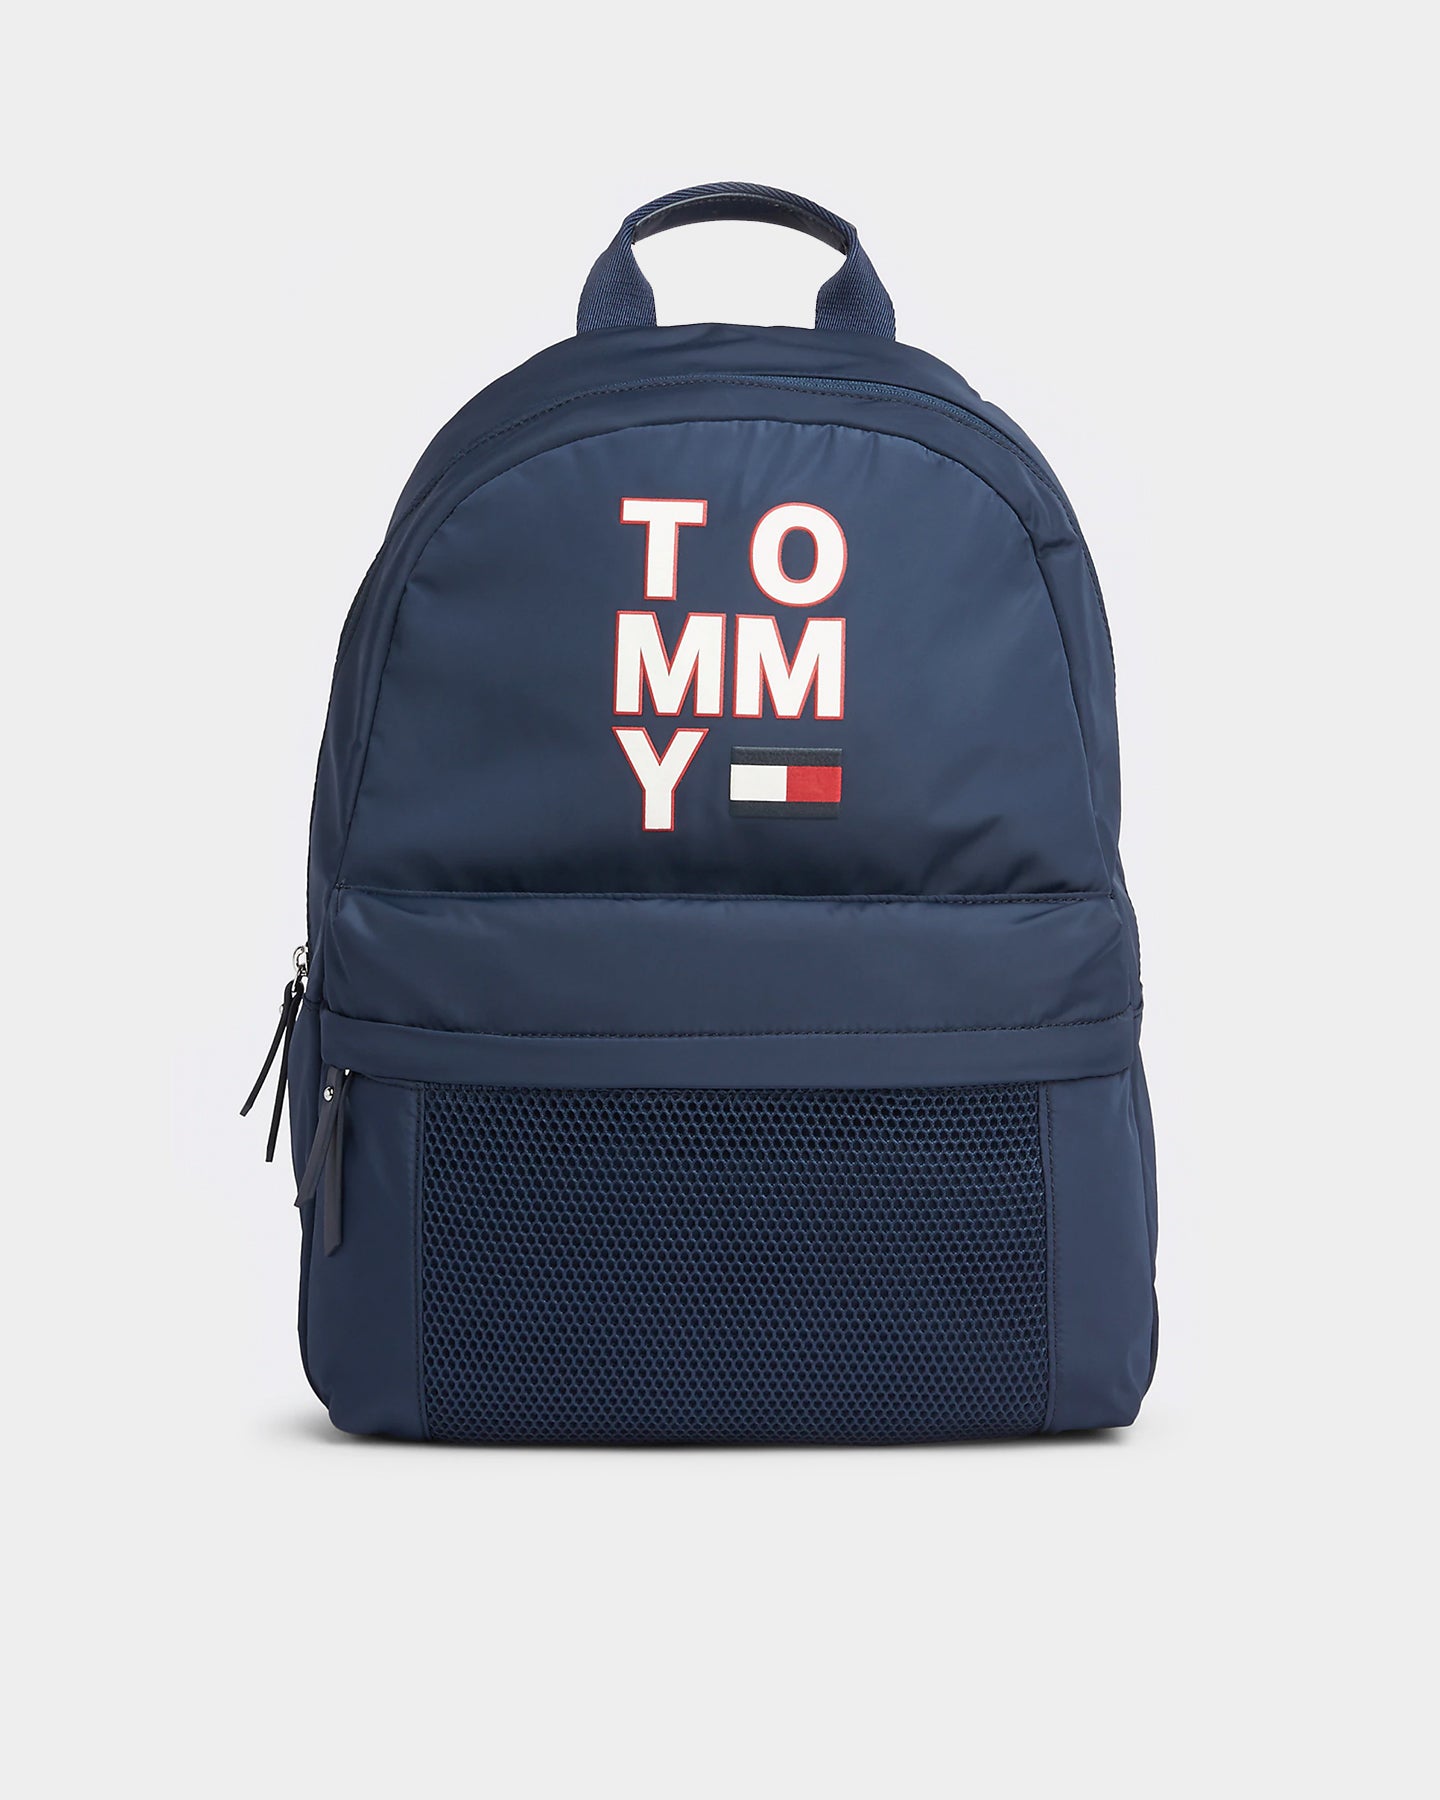 tommy backpack black